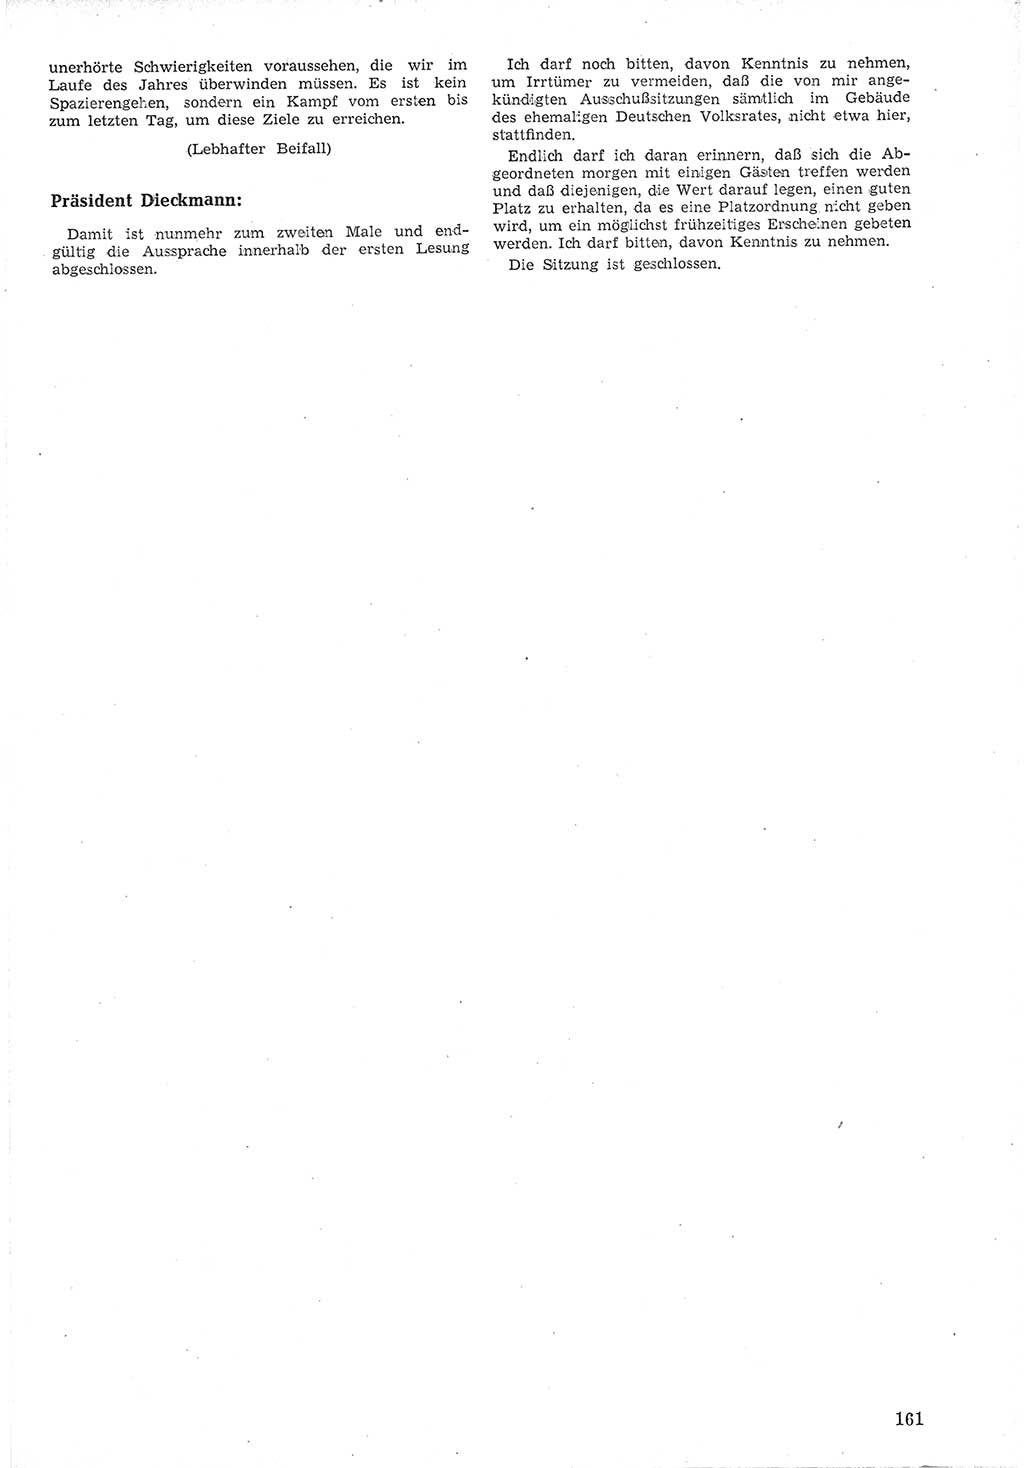 Provisorische Volkskammer (VK) der Deutschen Demokratischen Republik (DDR) 1949-1950, Dokument 173 (Prov. VK DDR 1949-1950, Dok. 173)